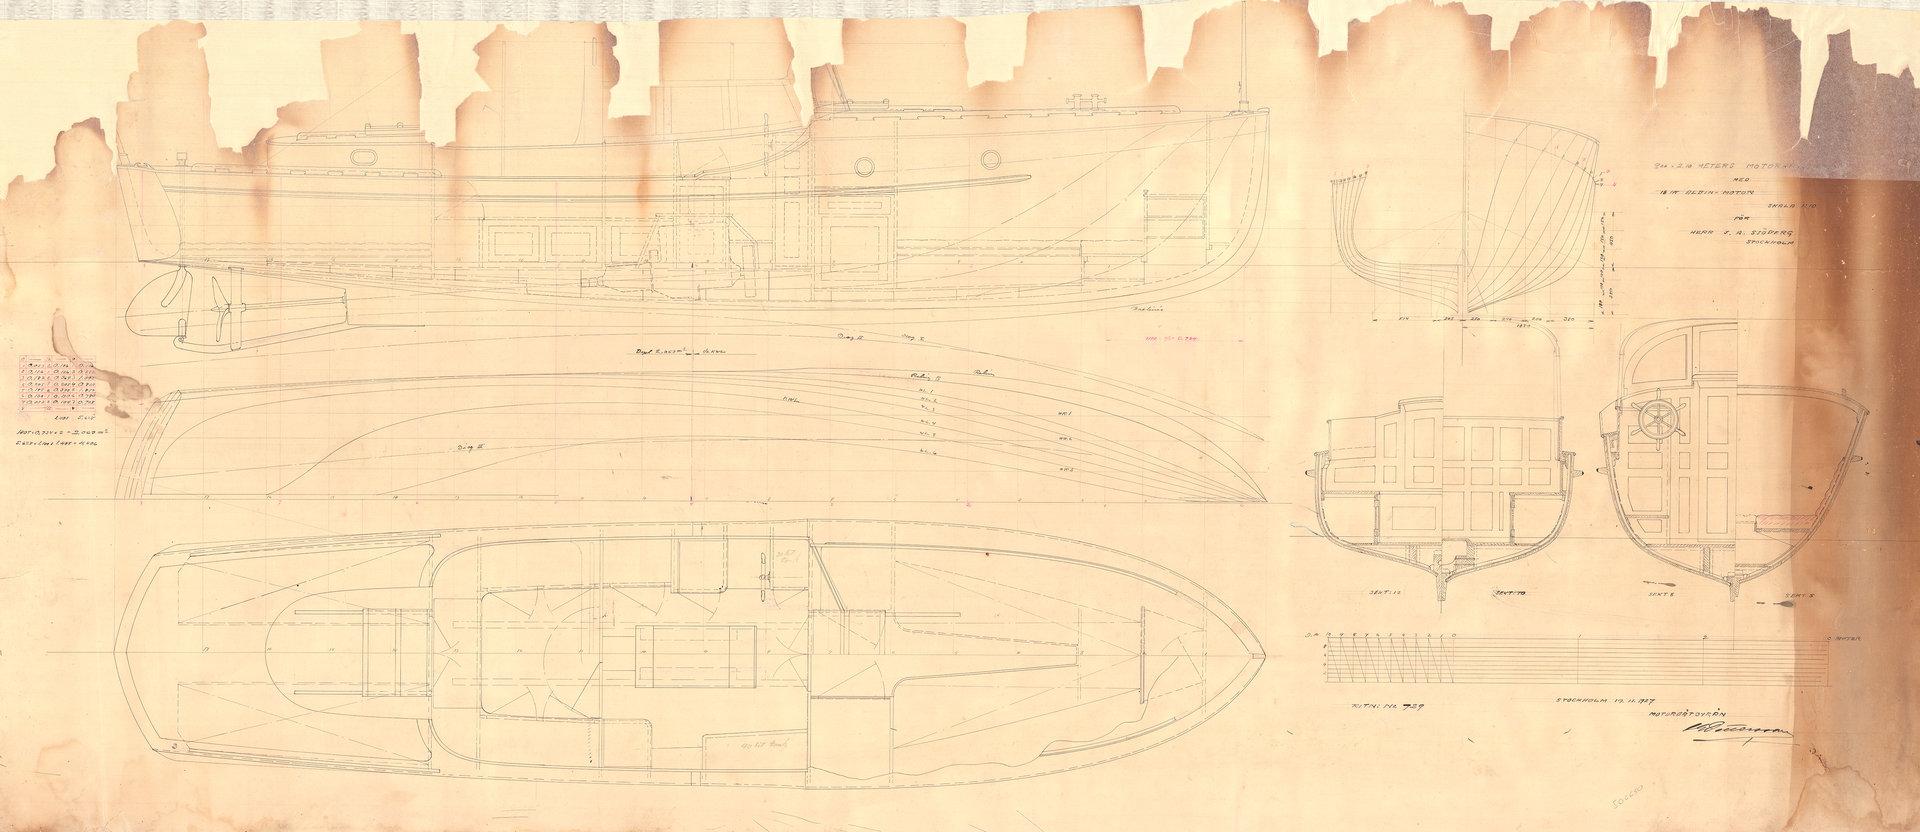 Paadi tõenäoline originaaljoonis / Likely original sketch of boat